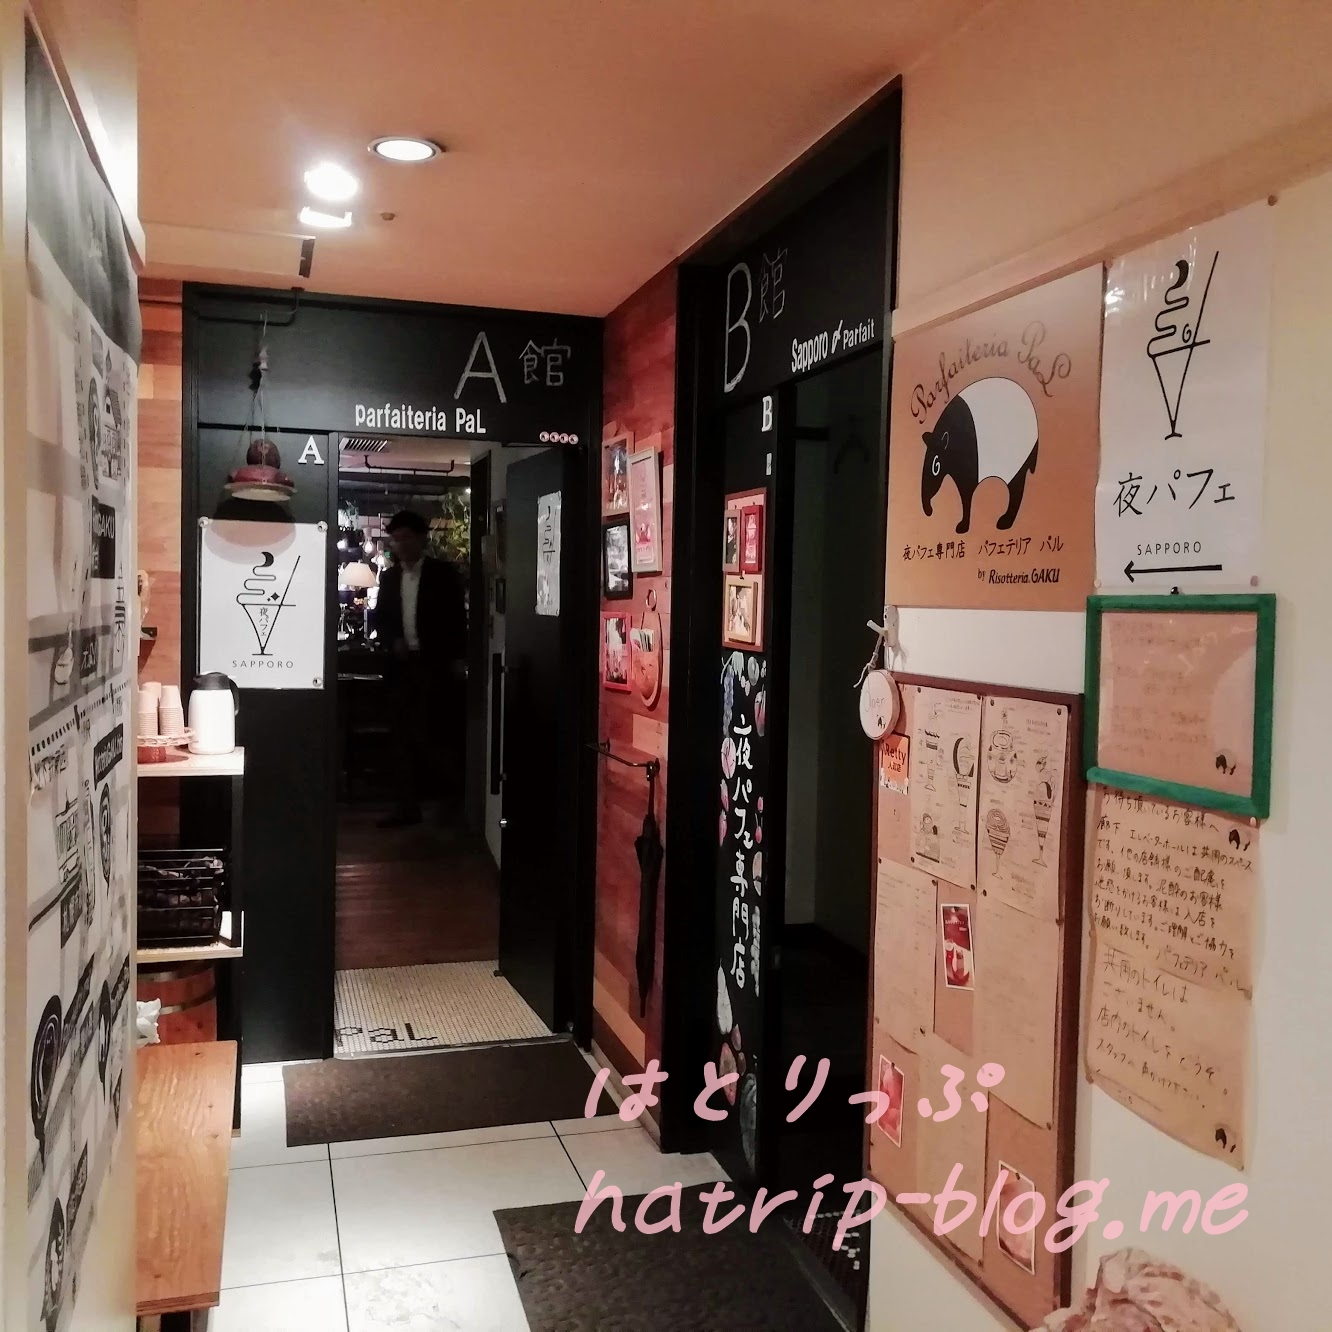 札幌 すすきの 夜パフェ専門店 パフェテリア パル